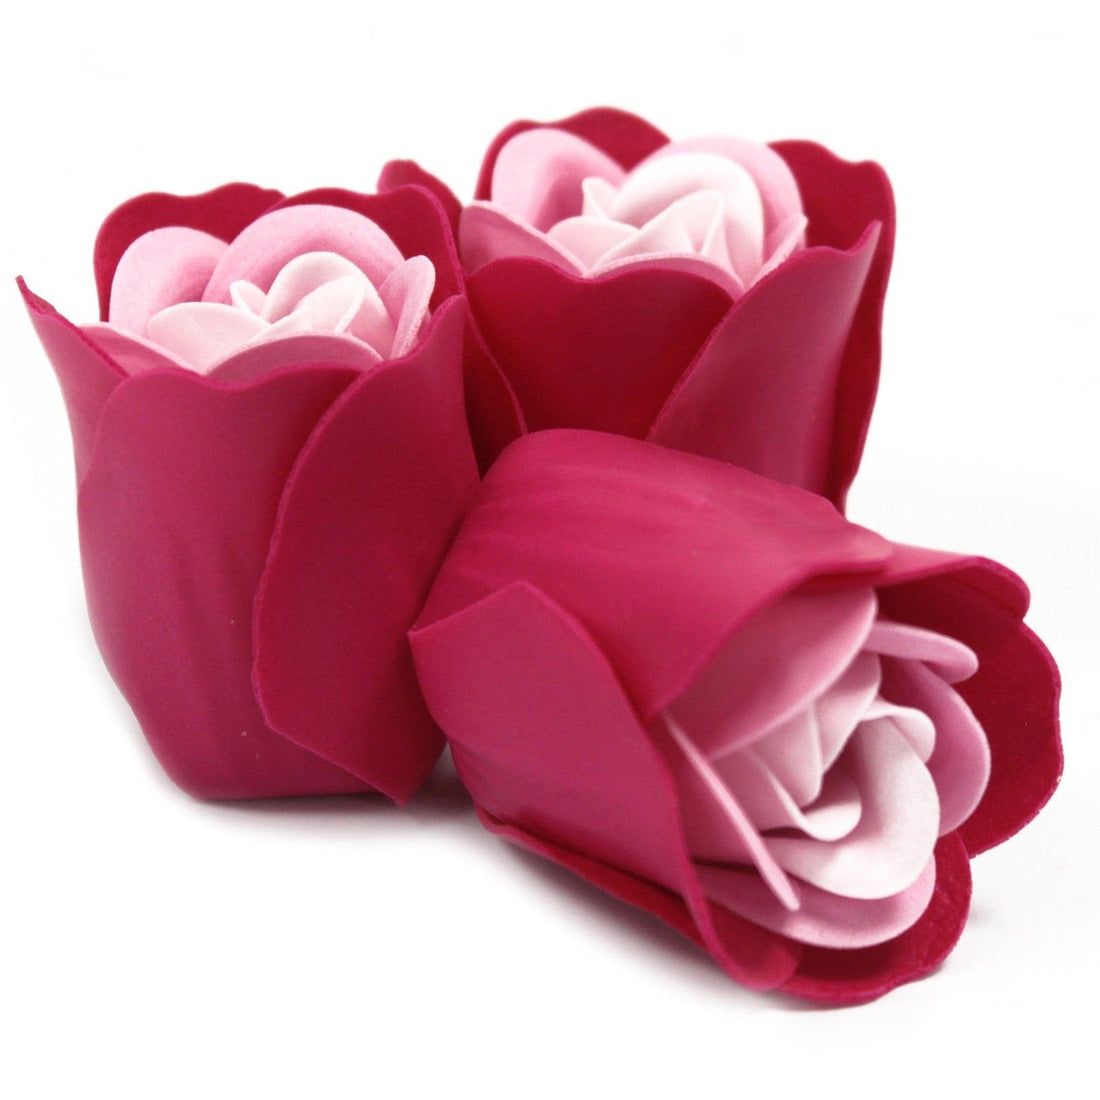 Set of 3 Soap Flower Heart Box - Pink Roses - best price from Maltashopper.com LSF-14